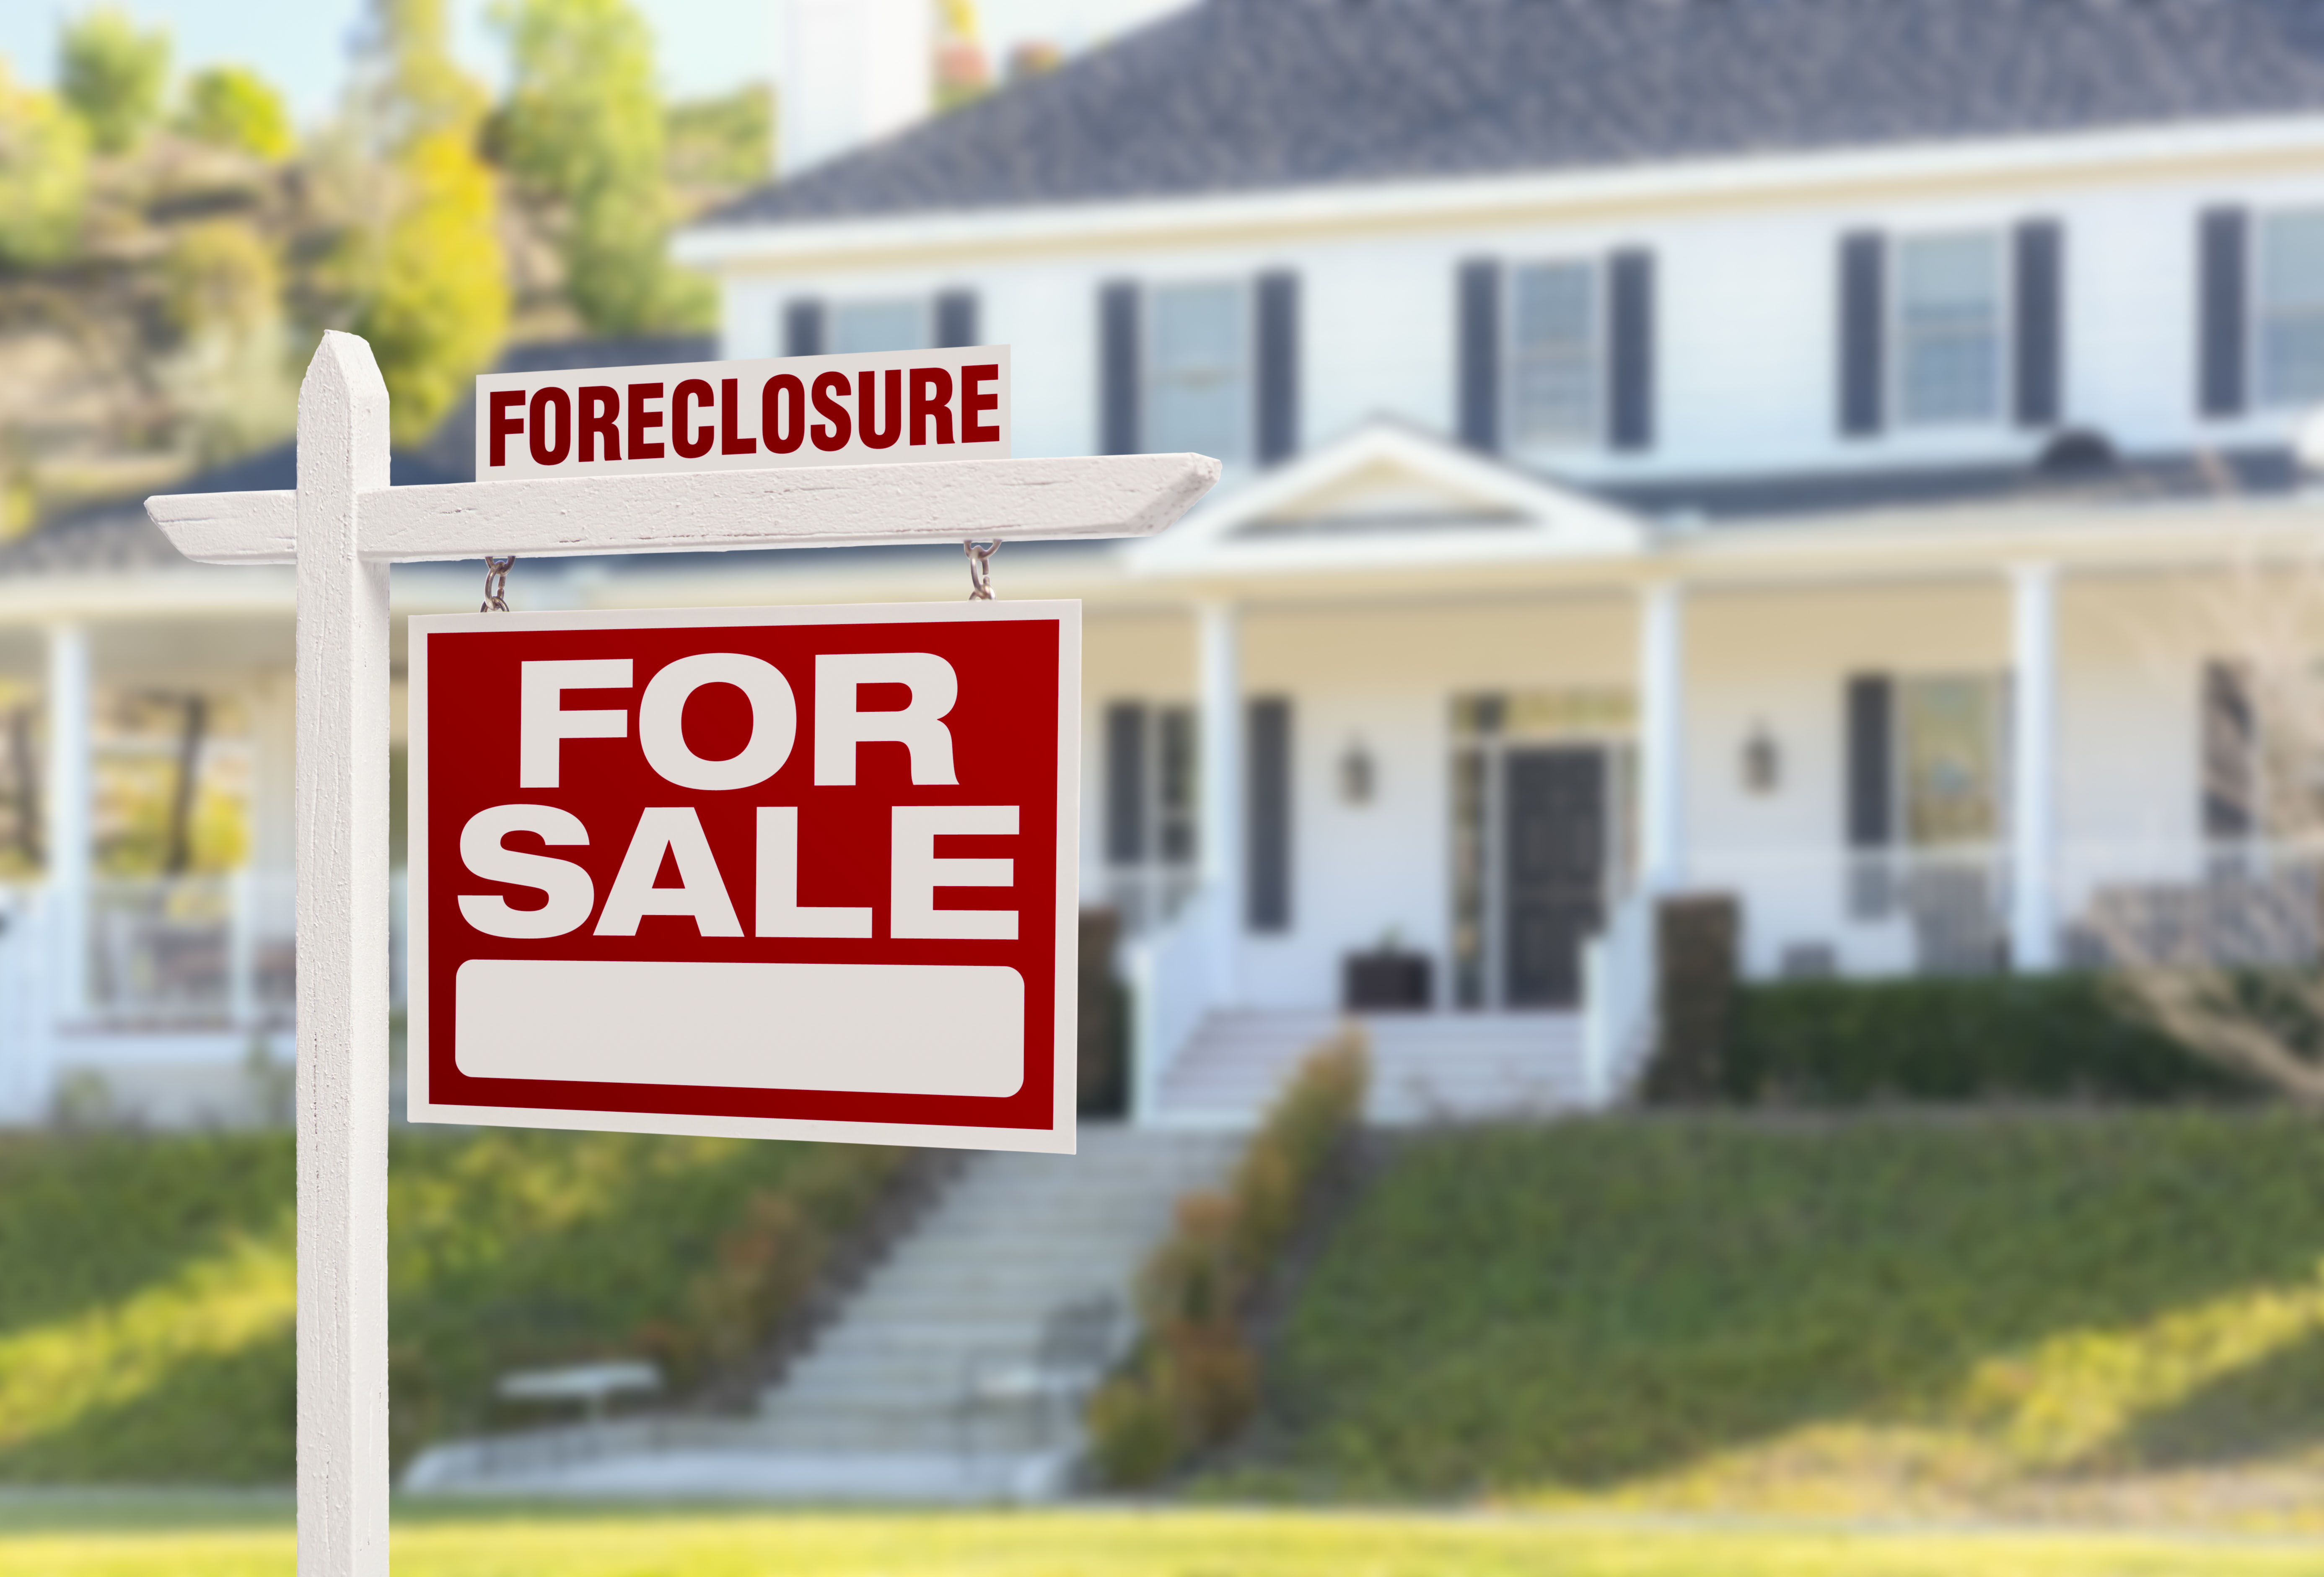 Foreclosure in california